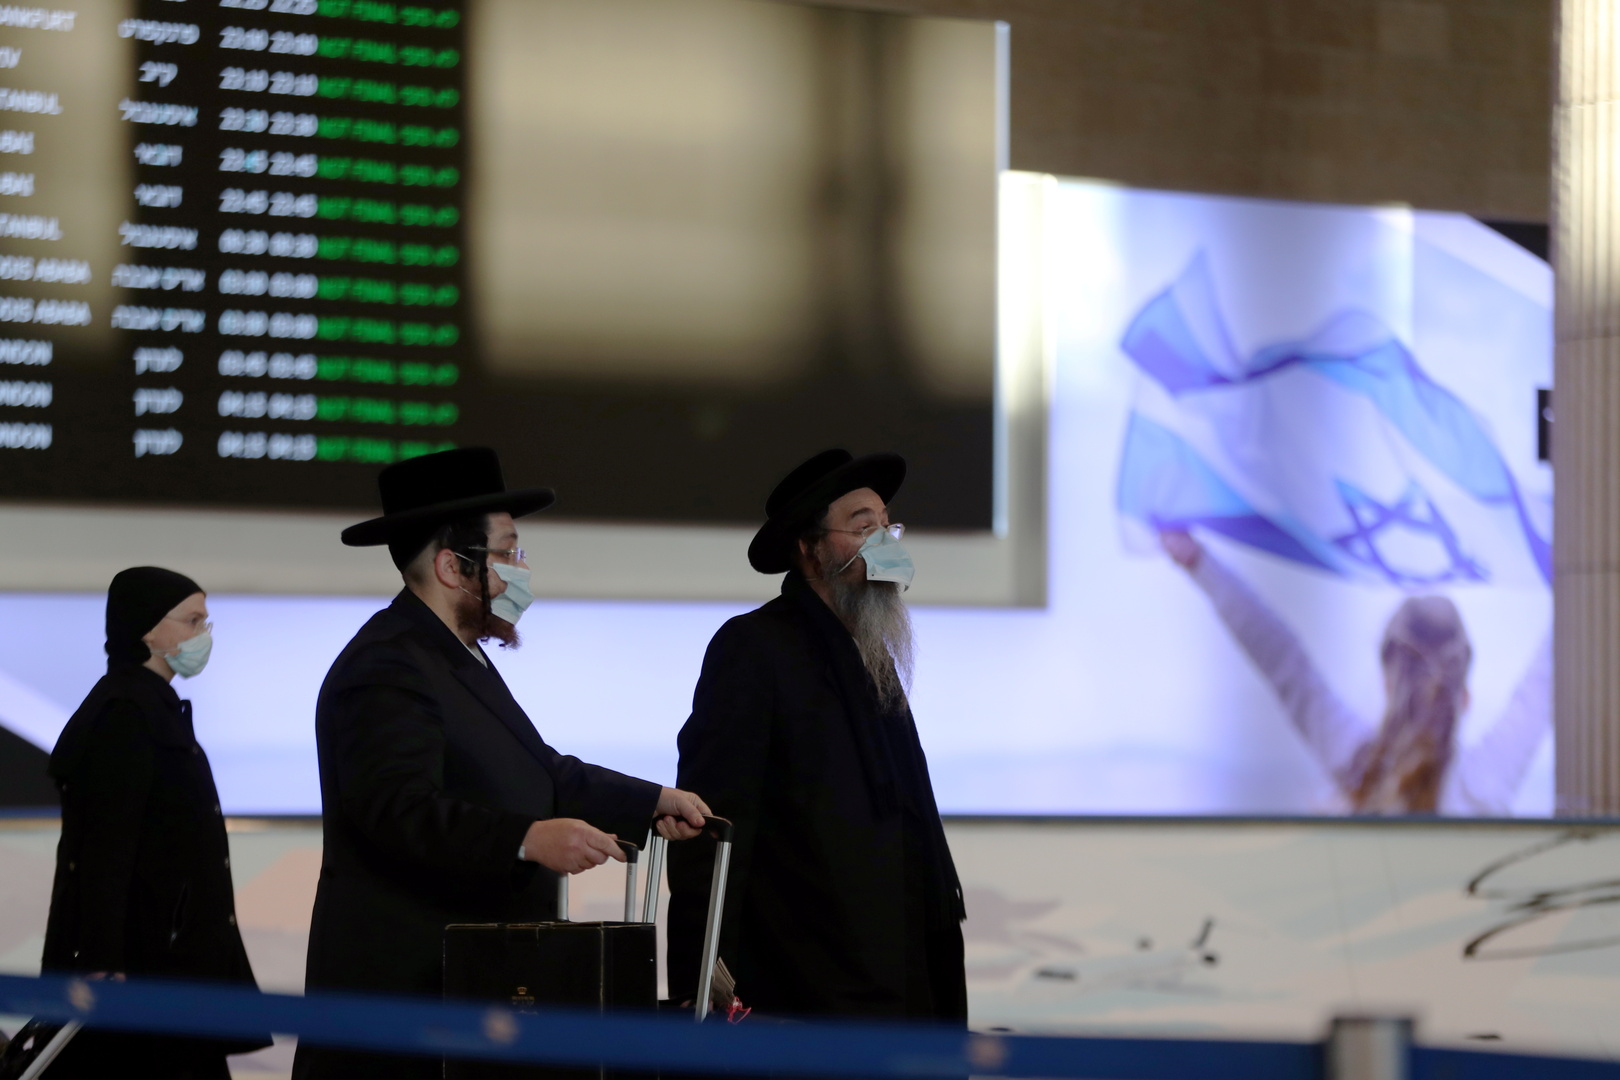 بعد تهديدات واشنطن.. إسرائيل تعيد فتح مطارها الدولي جزئيا في نهاية الأسبوع